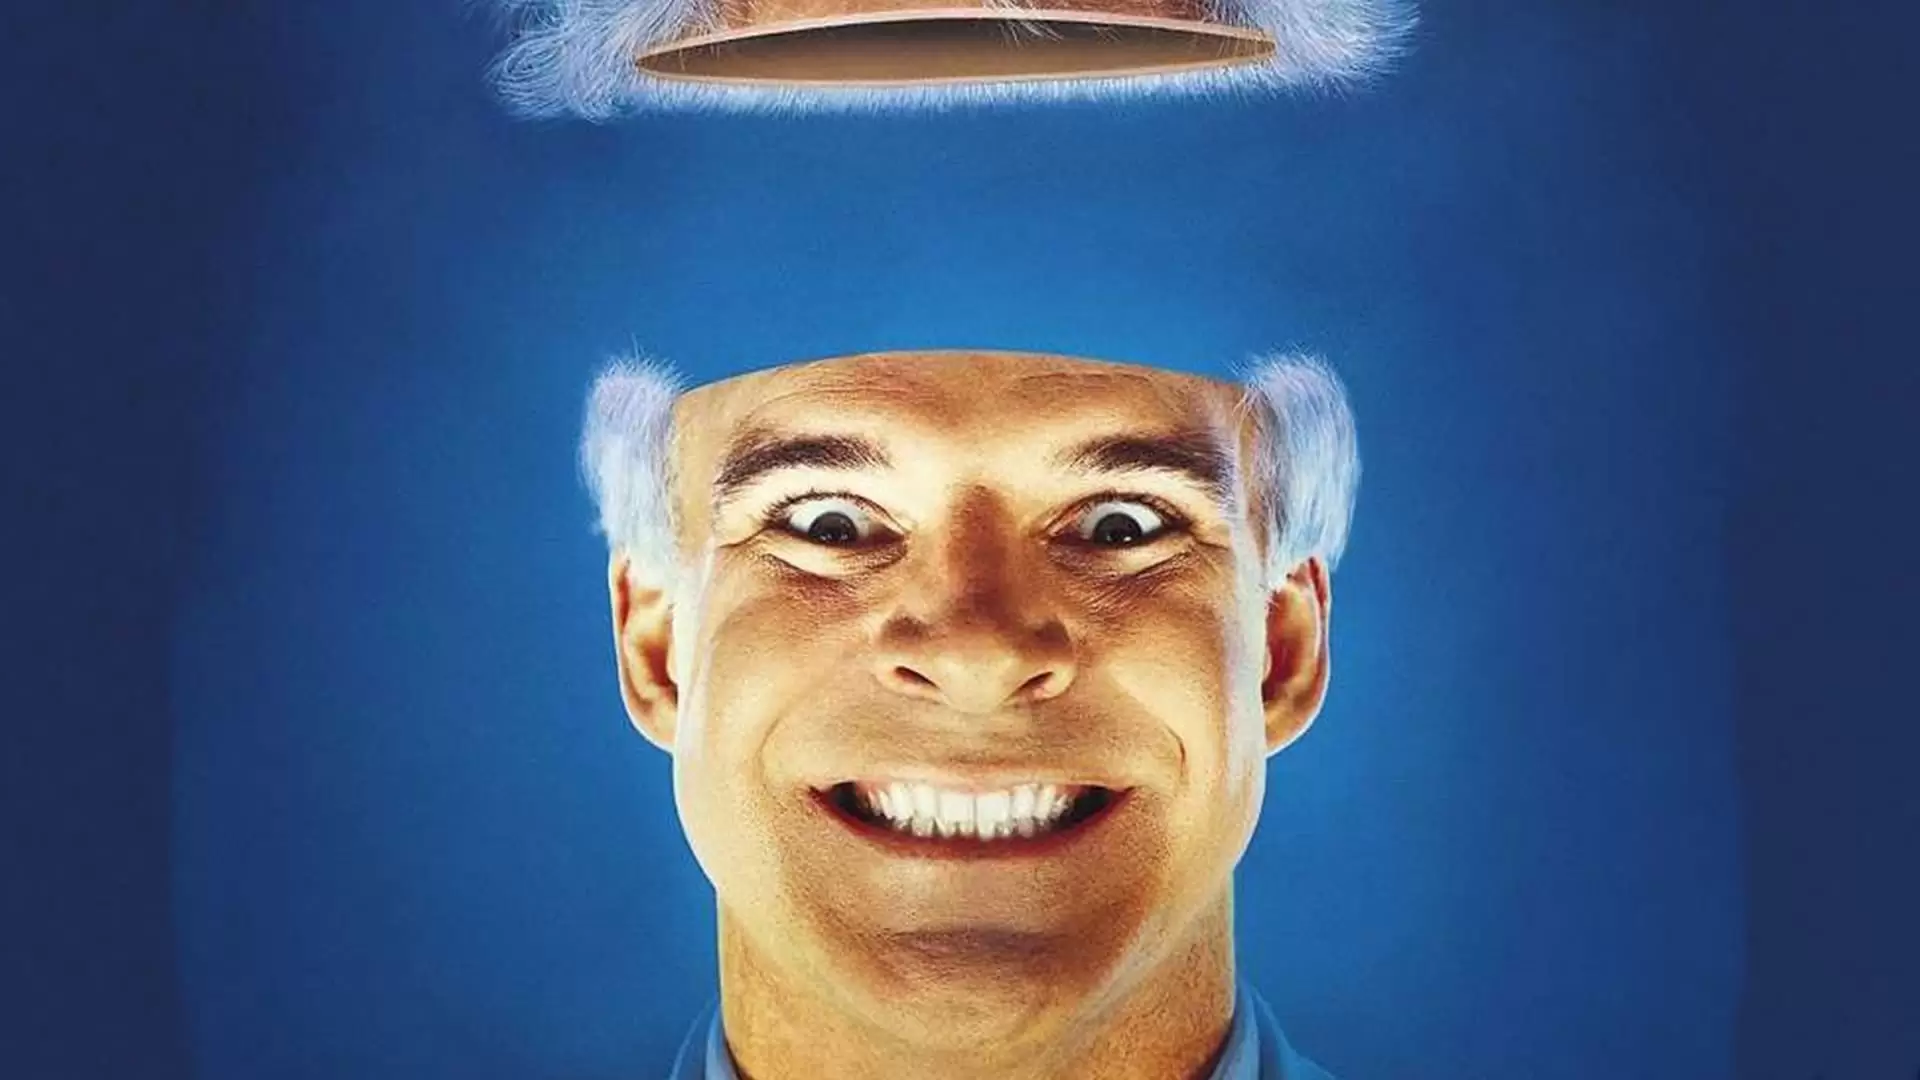 دانلود فیلم The Man with Two Brains 1983